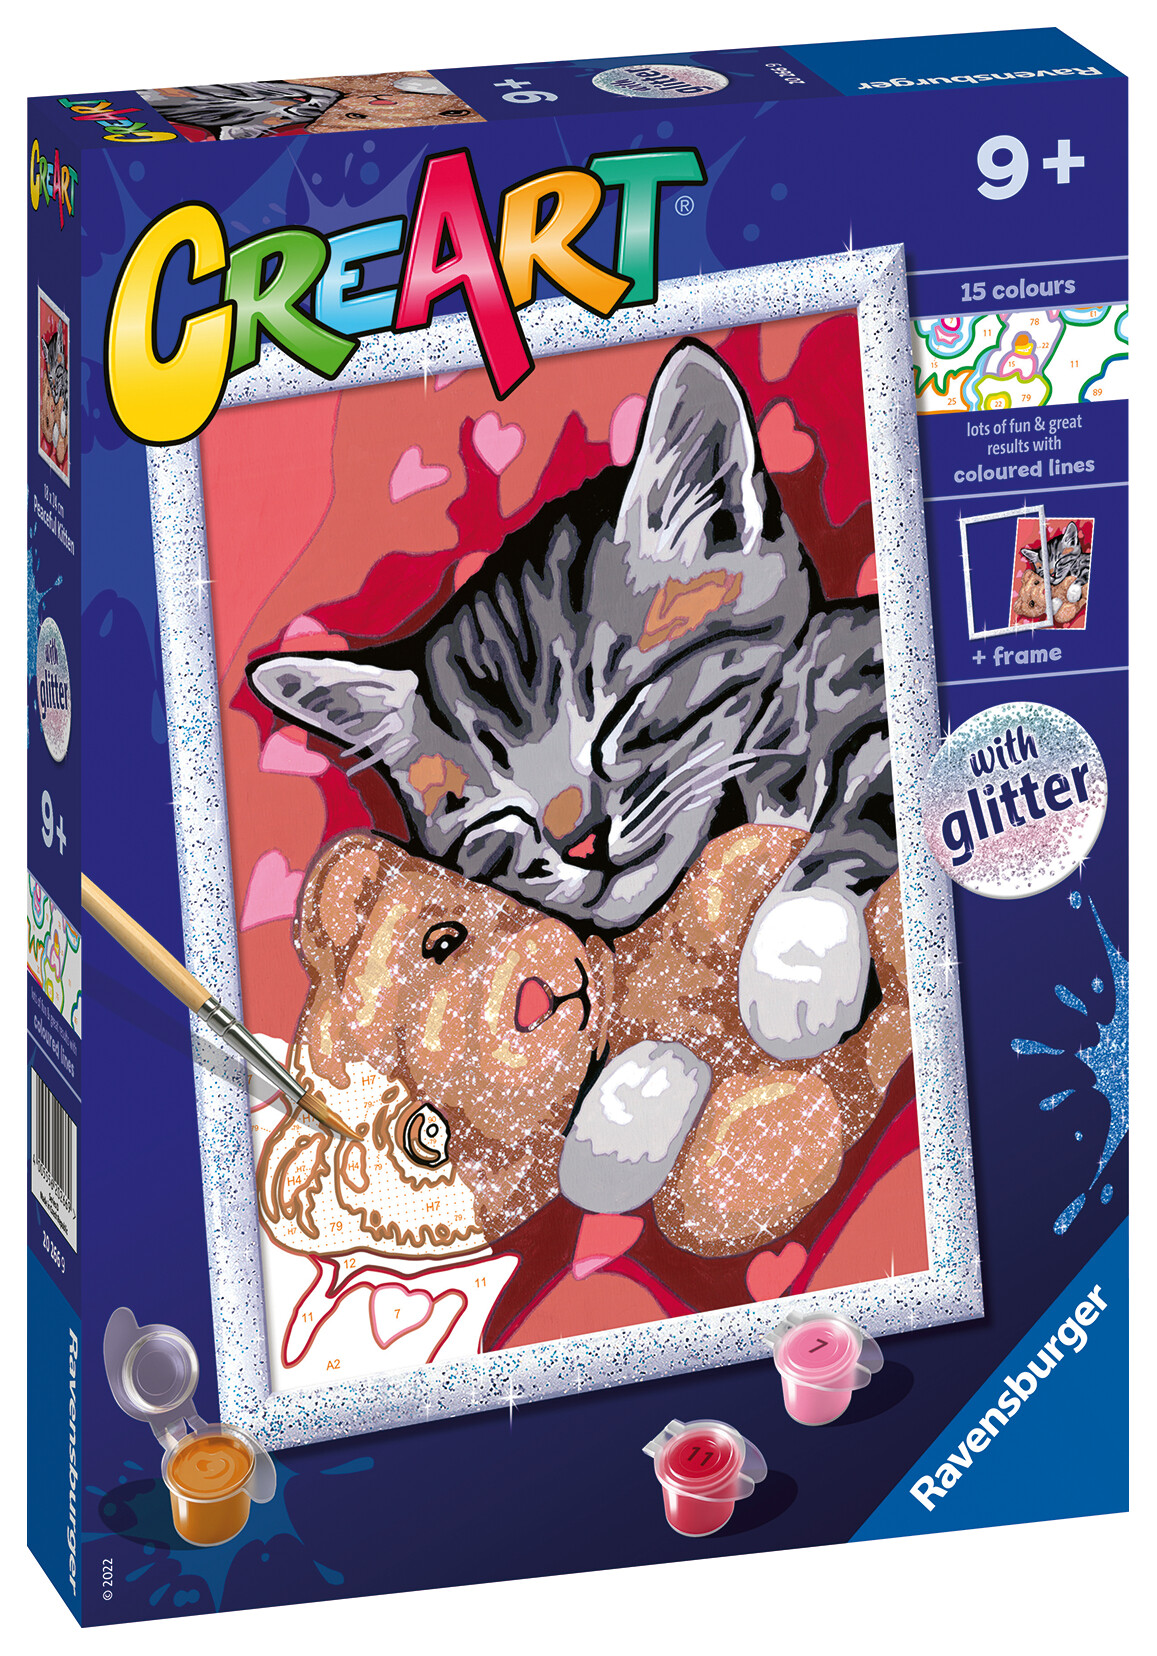 Ravensburger - creart serie d: gattino e il suo orsetto, kit per dipingere con i numeri, contiene una tavola prestampata, pennello, colori e accessori, gioco creativo per bambini 9+ anni - CREART